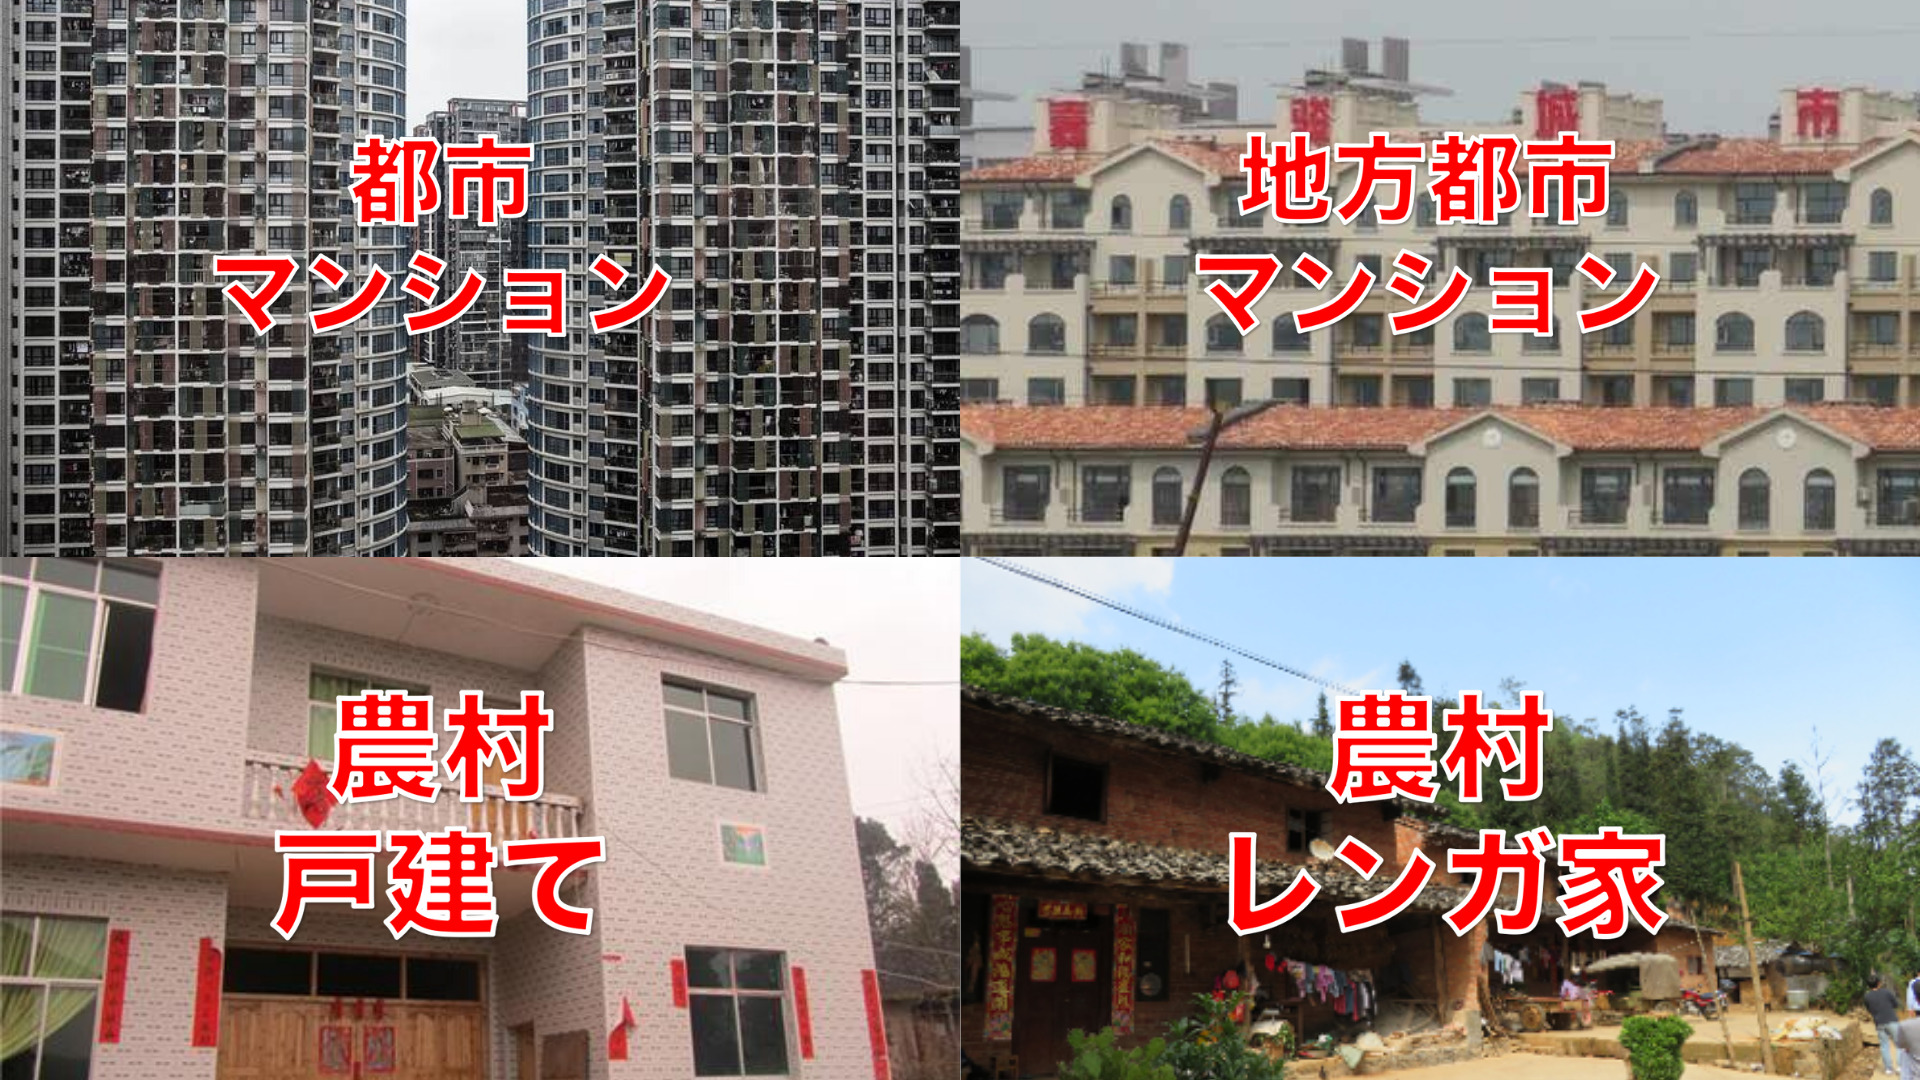 中国の住宅形式。都市部と地方都市のマンション写真、農村の戸建てとレンガ風住居の写真。